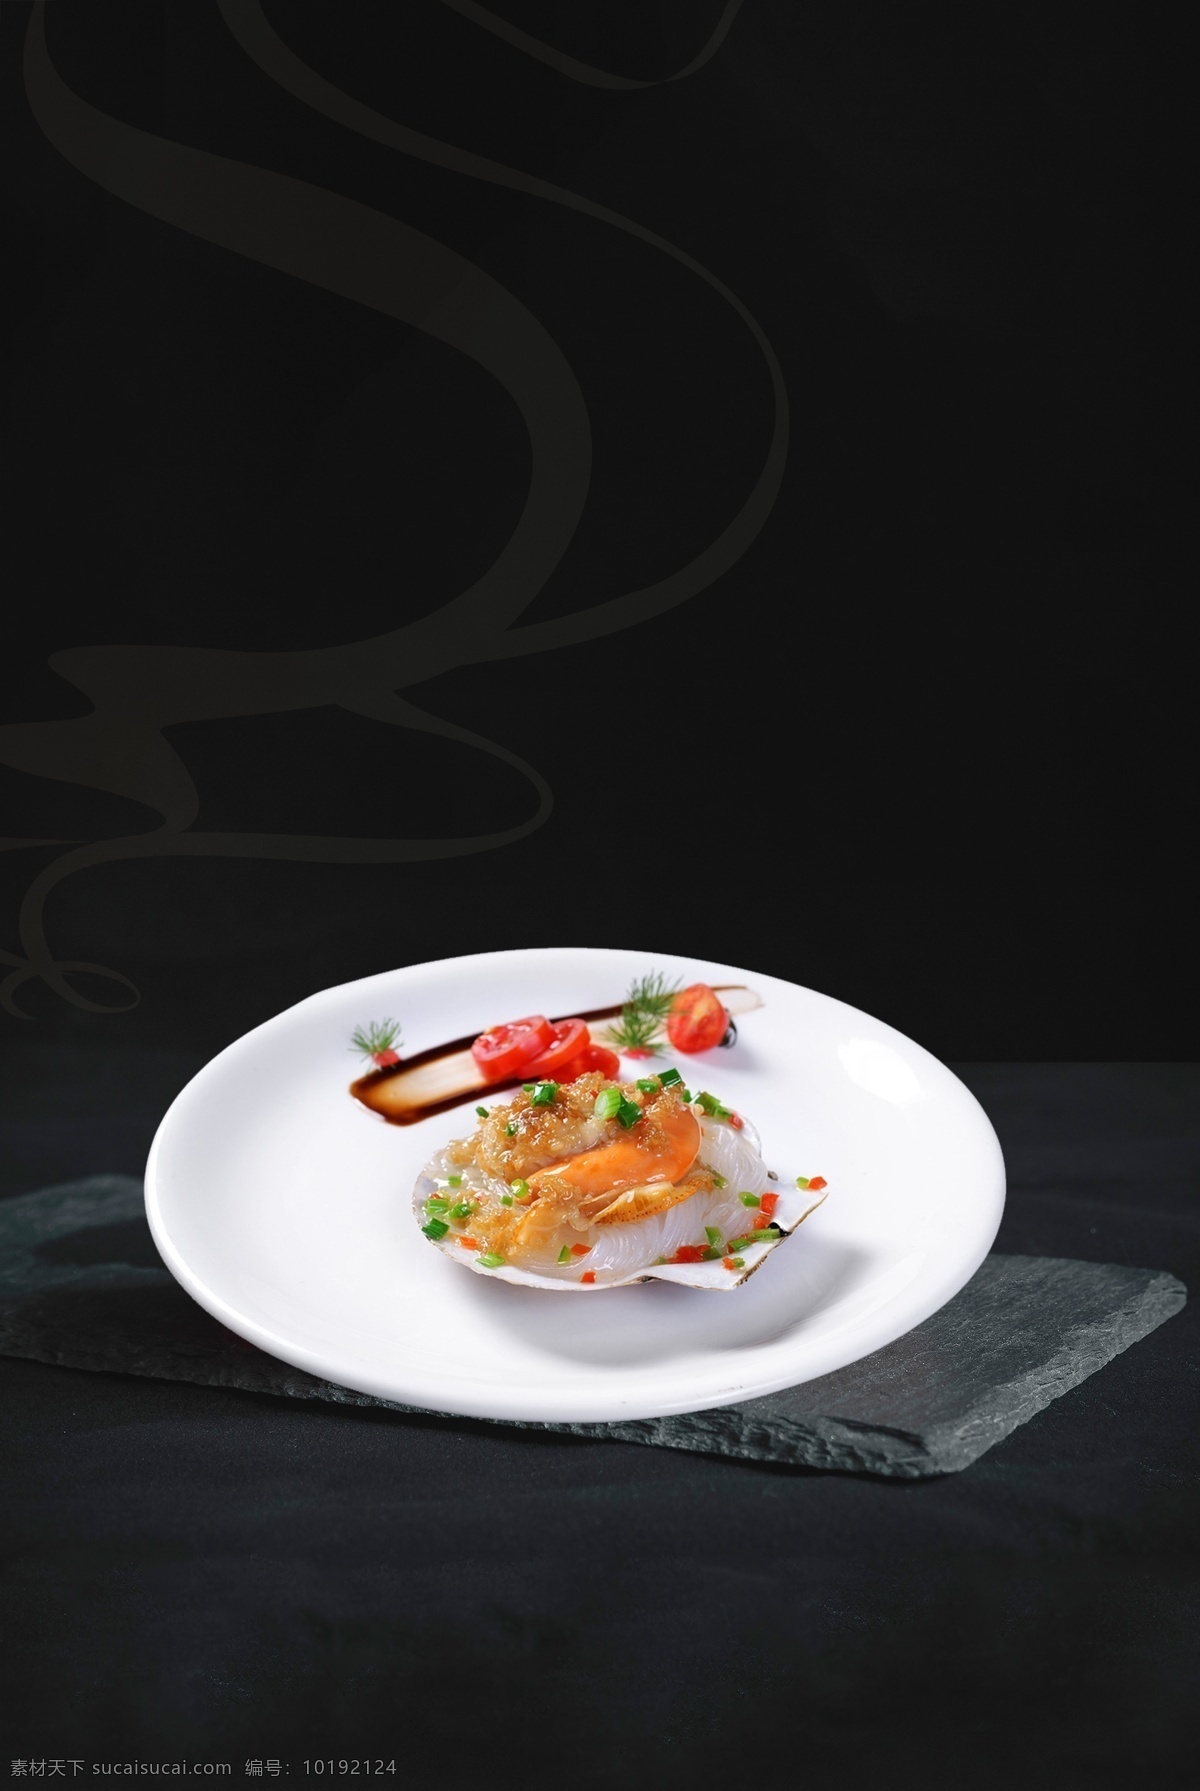 美味 寿司 海报 创意海报 广告背景 料理店 美食海报下载 美味寿司 平面海报 日本美食 日本寿司 日料海报 三文鱼 式料理